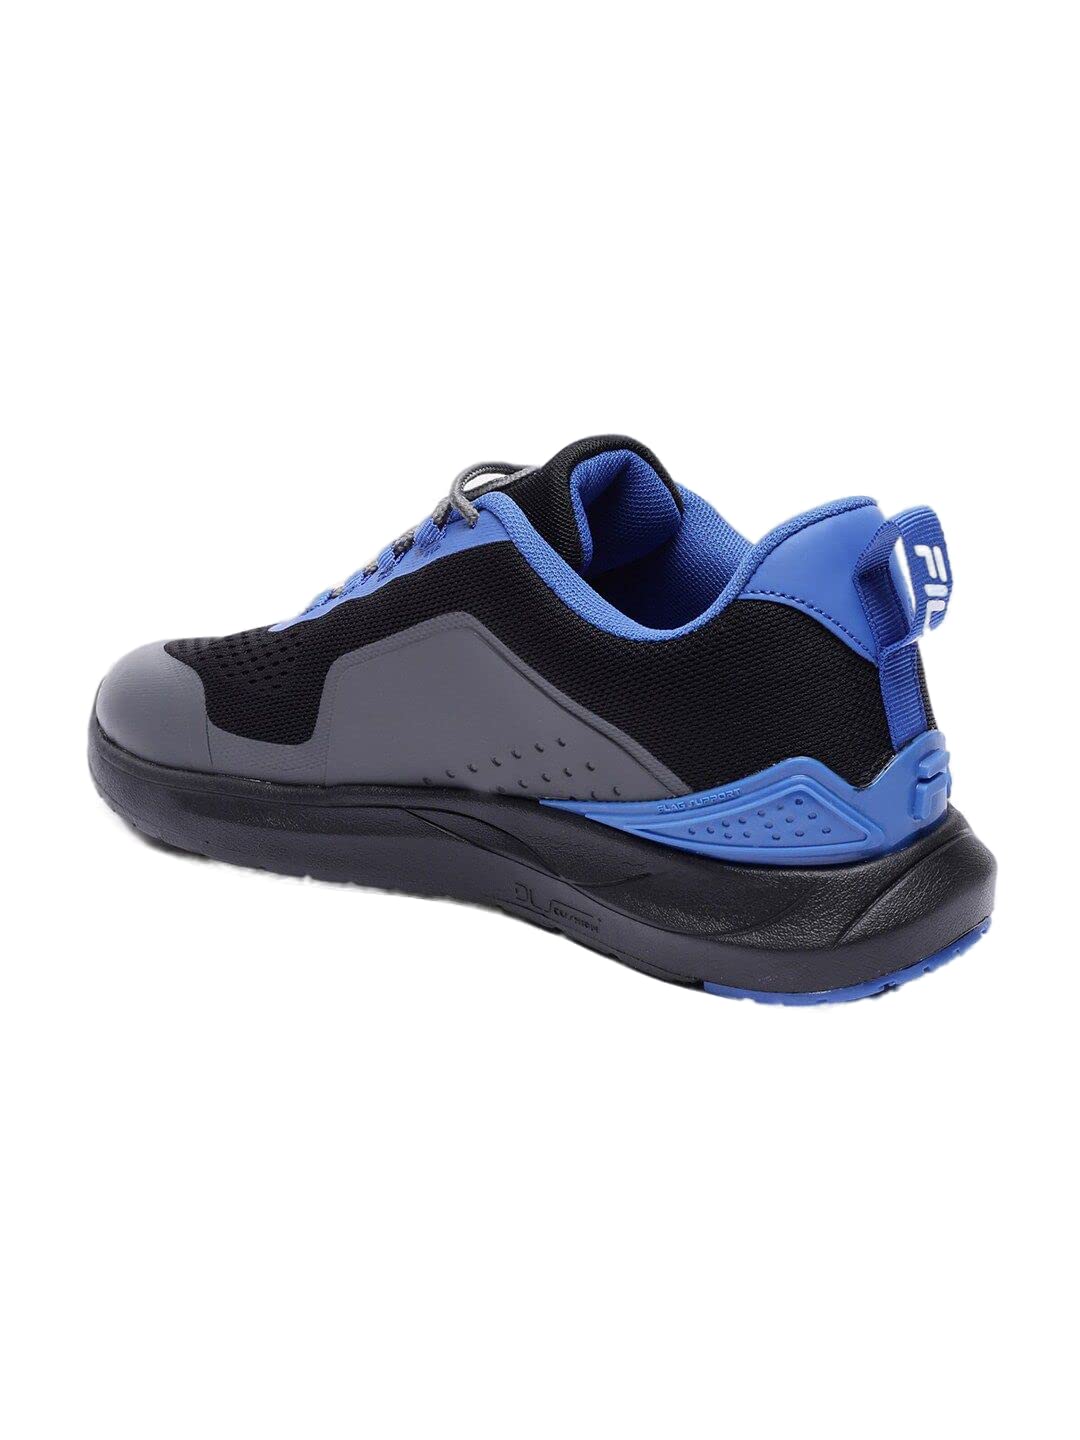 Fila Mens Vanda BLK/VCN/NAU BLU Sneaker - 10 UK (11009393) 